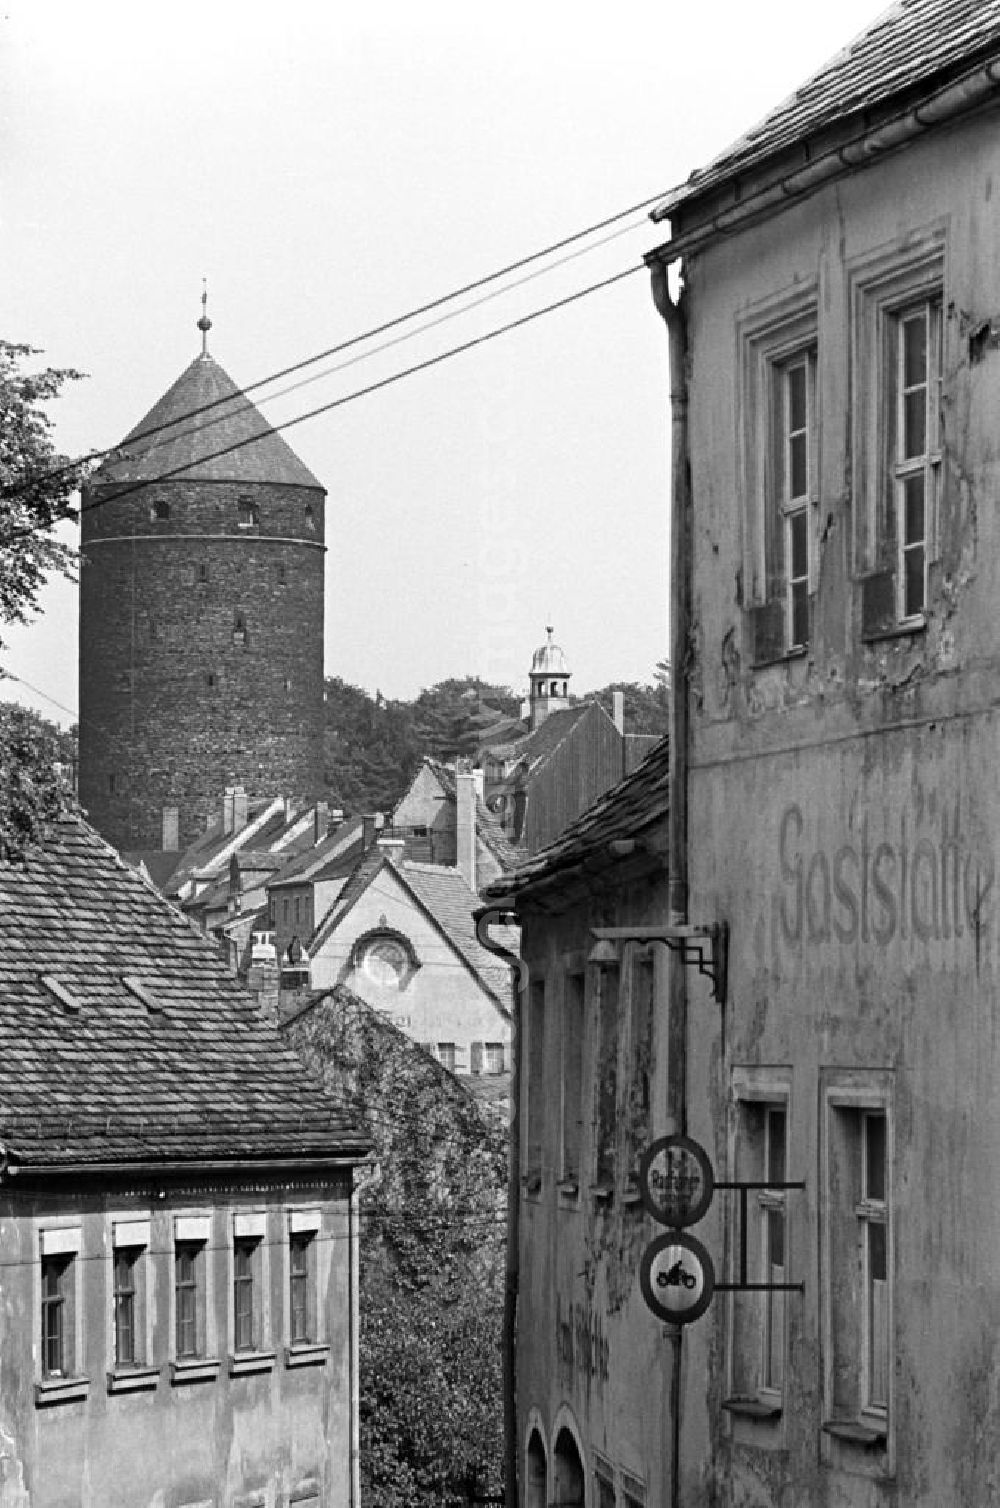 GDR picture archive: Freiberg - Blick auf den Donatsturm, einem Teil der alten Stadtbefestigung von Freiberg im Erzgebirge.